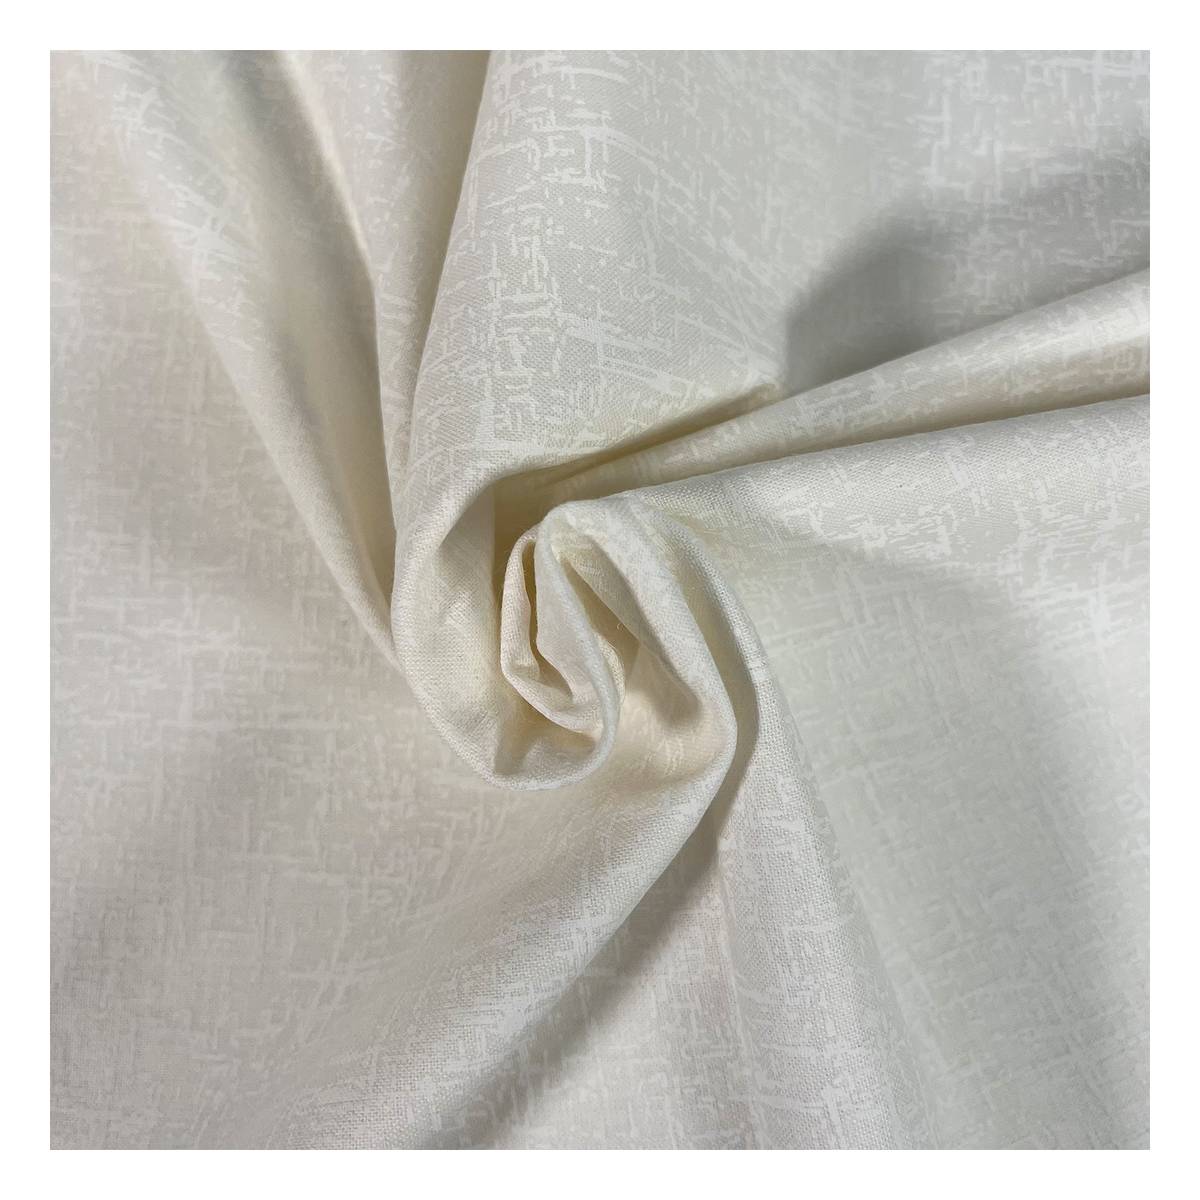 Fife plain ivory brushed cotton melange fabric